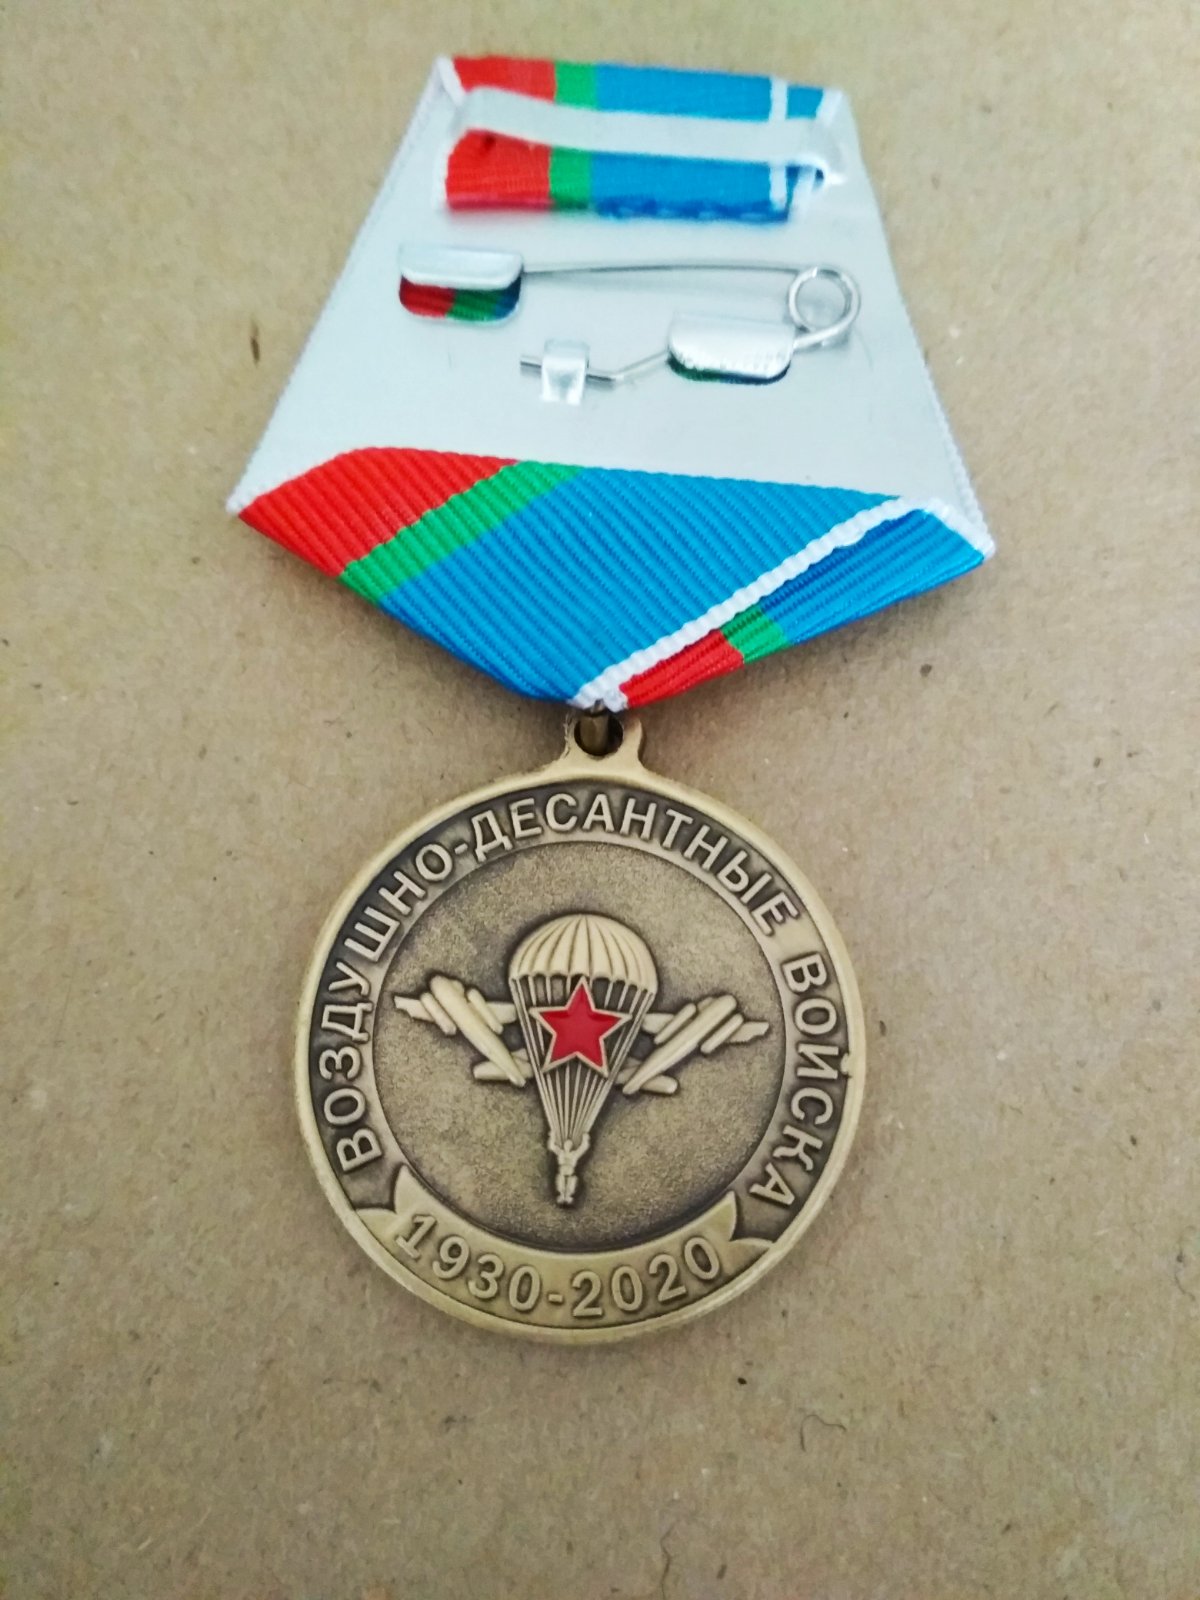 Медаль "90 лет ВДВ". Изображение Маргелова В.Ф. в полный рост, ИЛ-76 и купола парашютов.